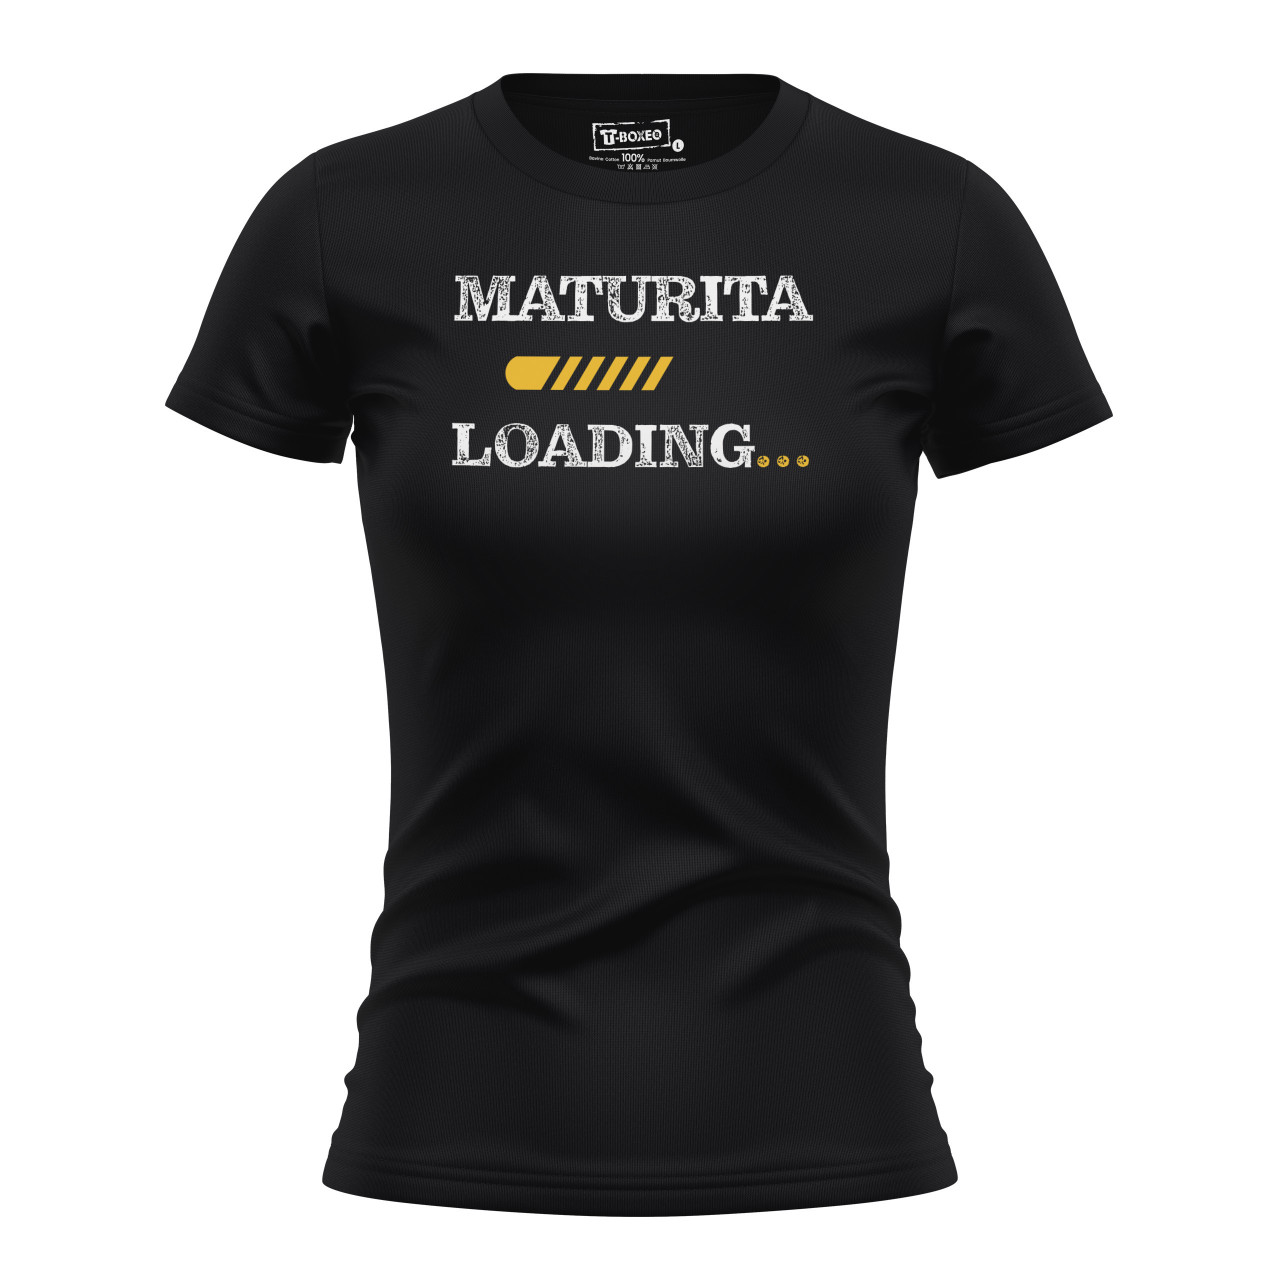 Dámské tričko s potiskem “Maturita loading”